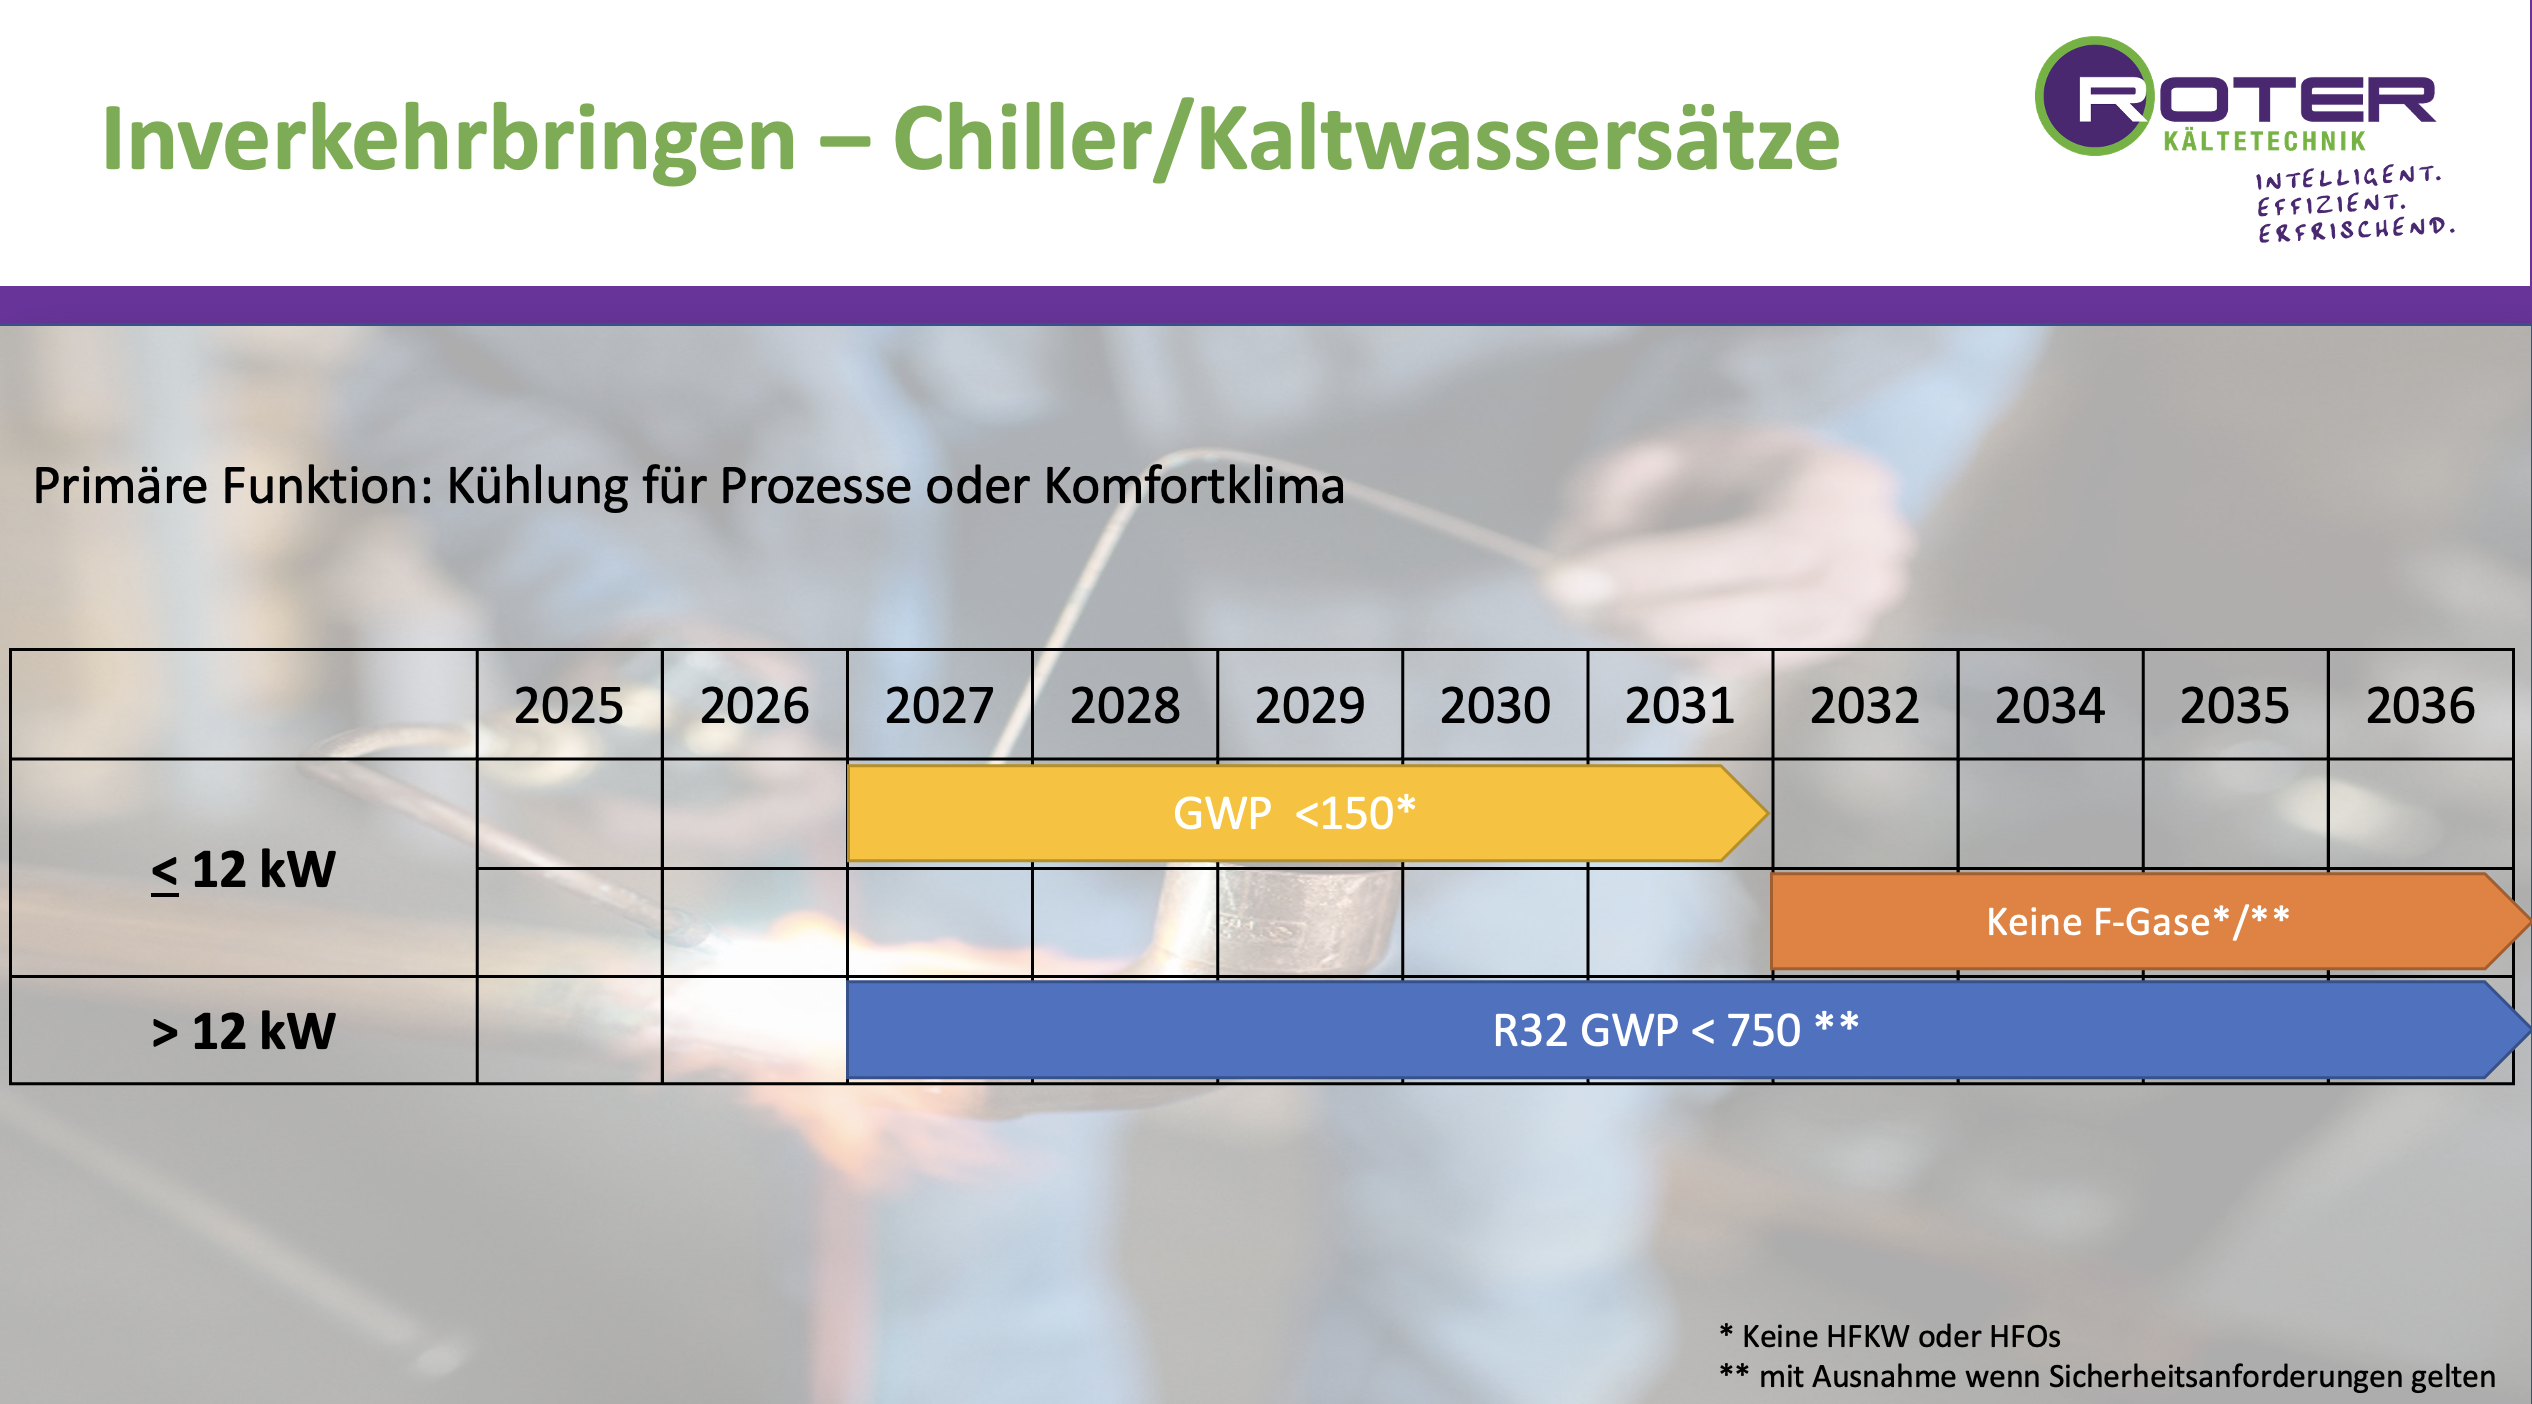 Inverkehrbringen - Chiller/Kaltwassersätze